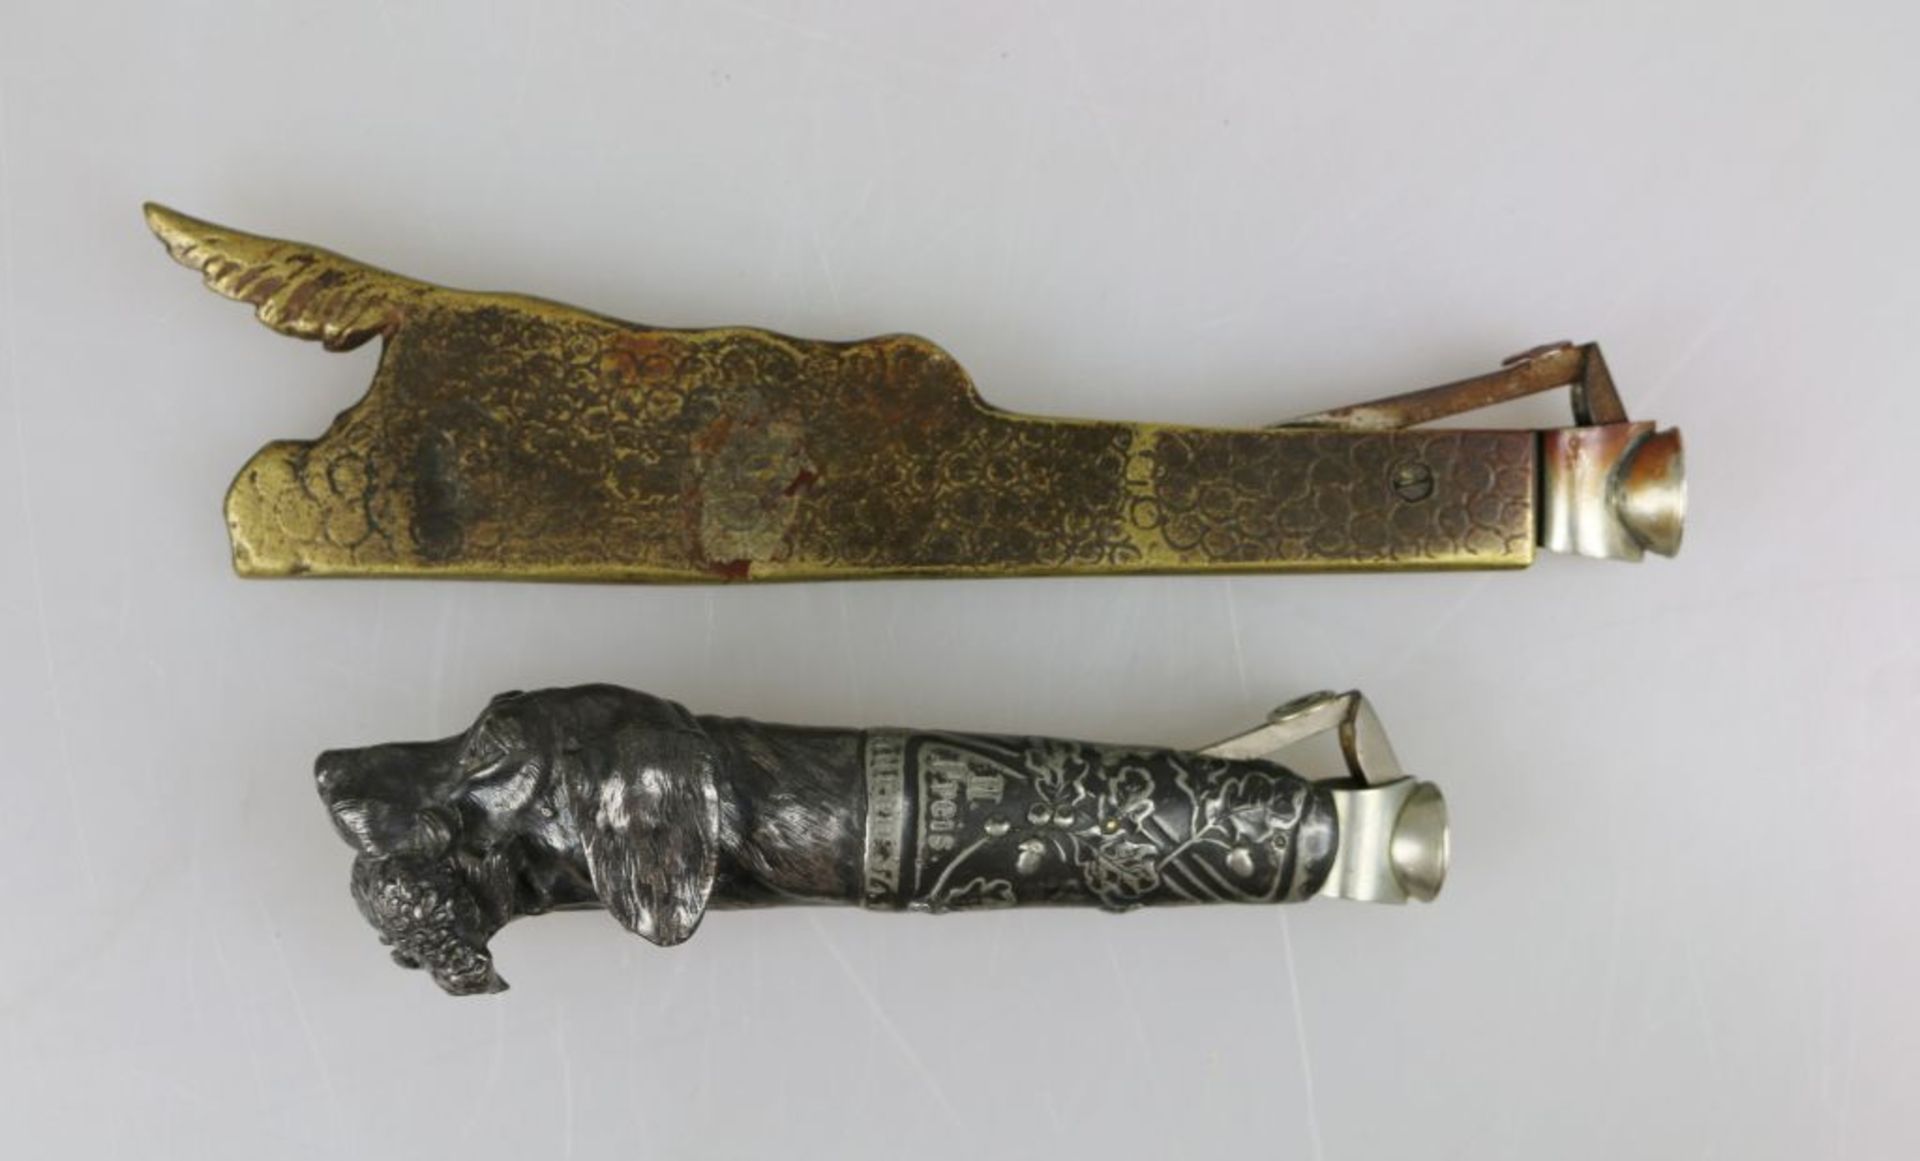 Paar Zigarrenabschneider, um 1900, Metall, Griff in Form eines Setters mit Beute im Maul bzw. - Bild 2 aus 2